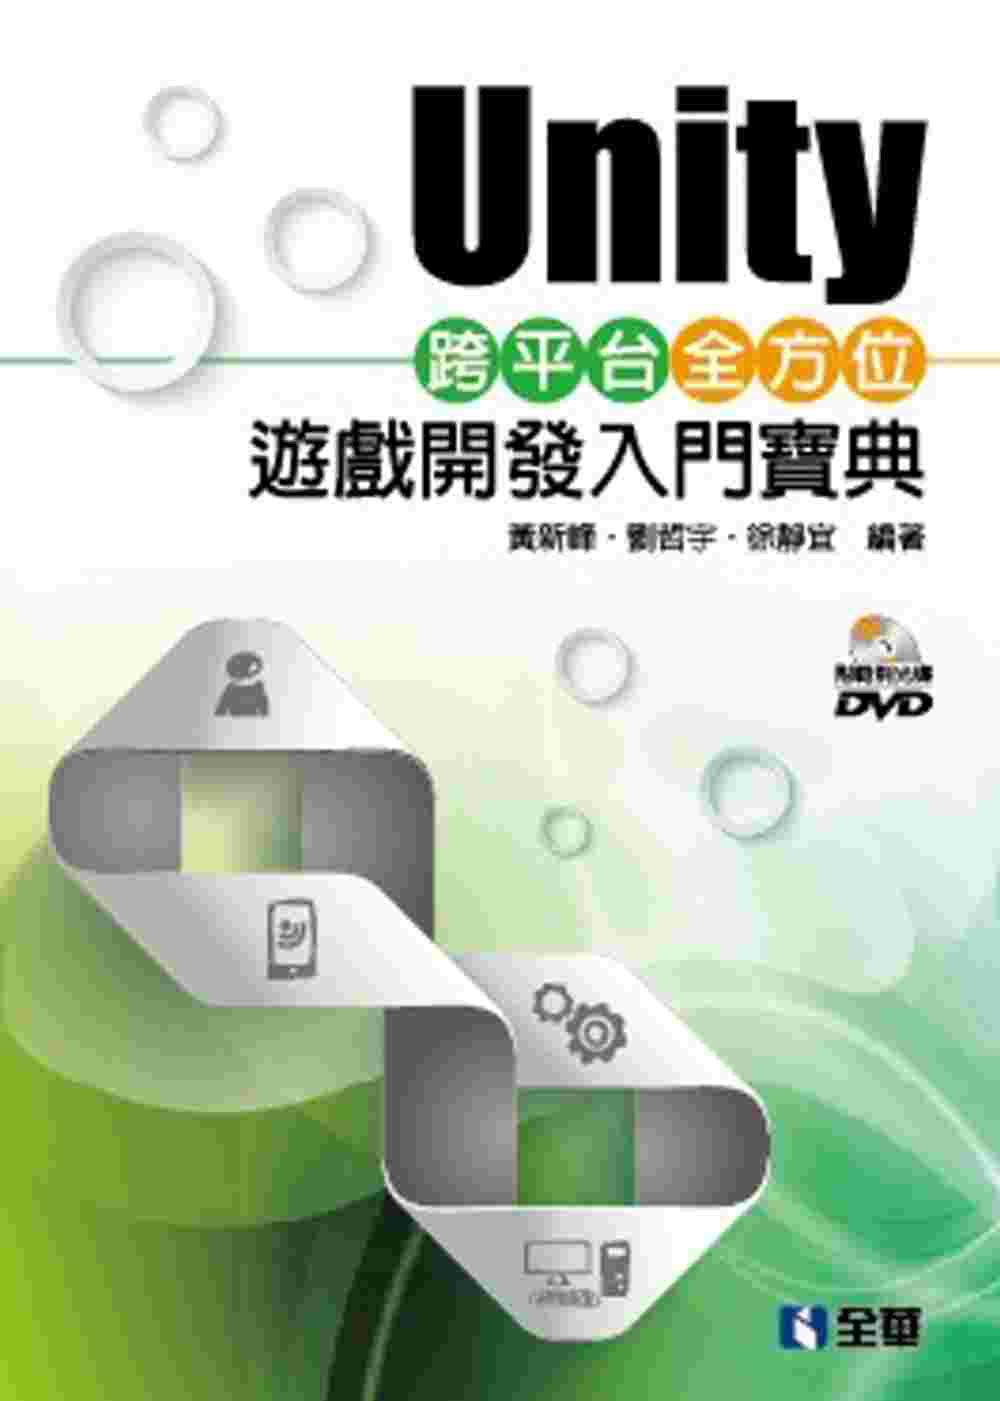 Unity跨平台全方位遊戲開發入門寶典(附範例光碟)